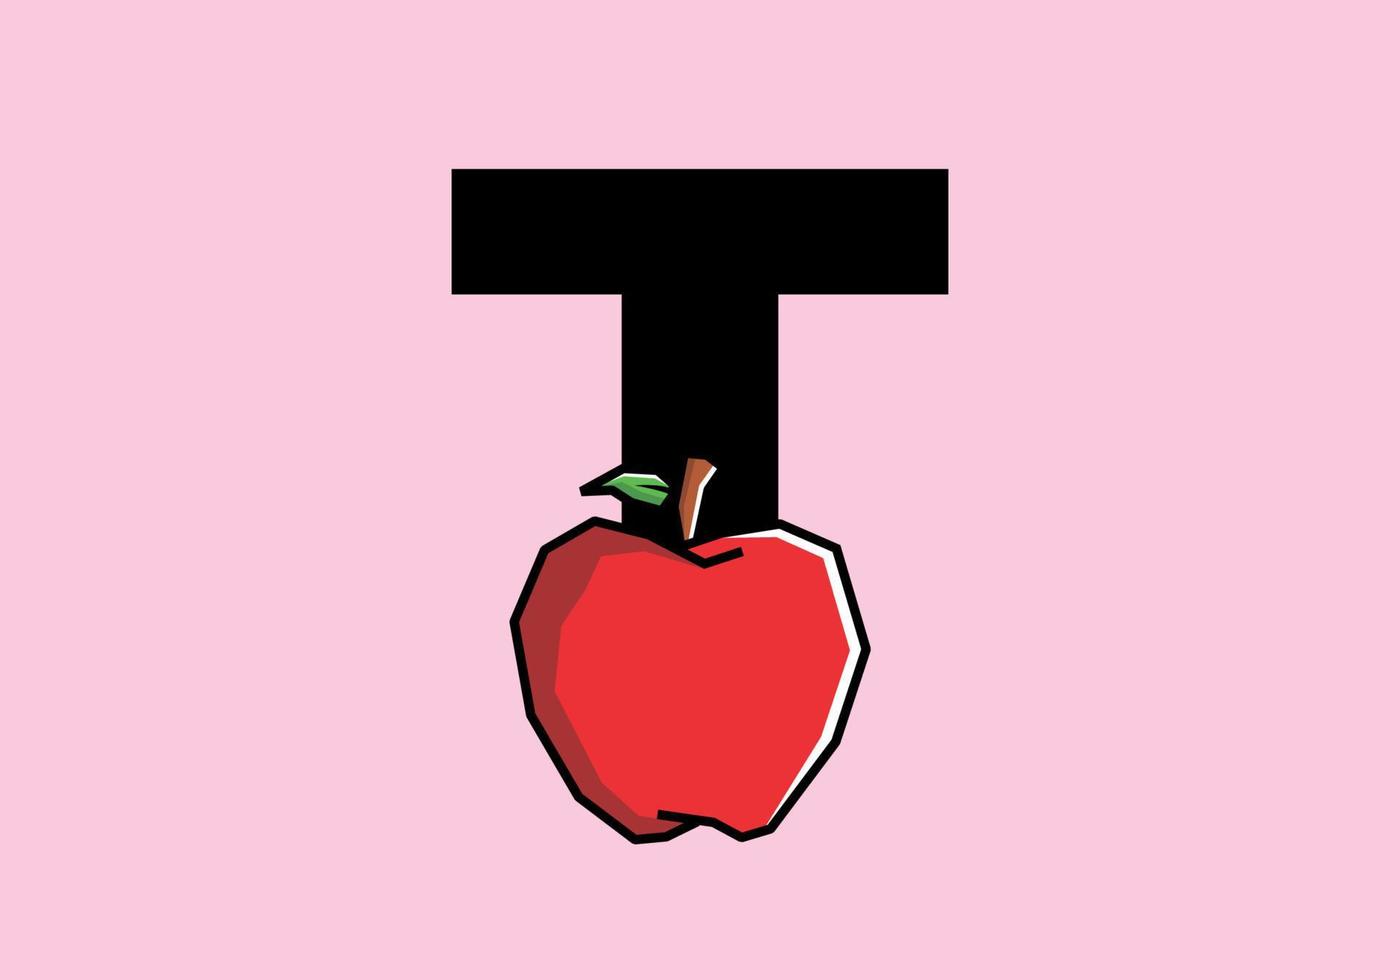 t lettera iniziale con mela rossa in stile artistico rigido vettore